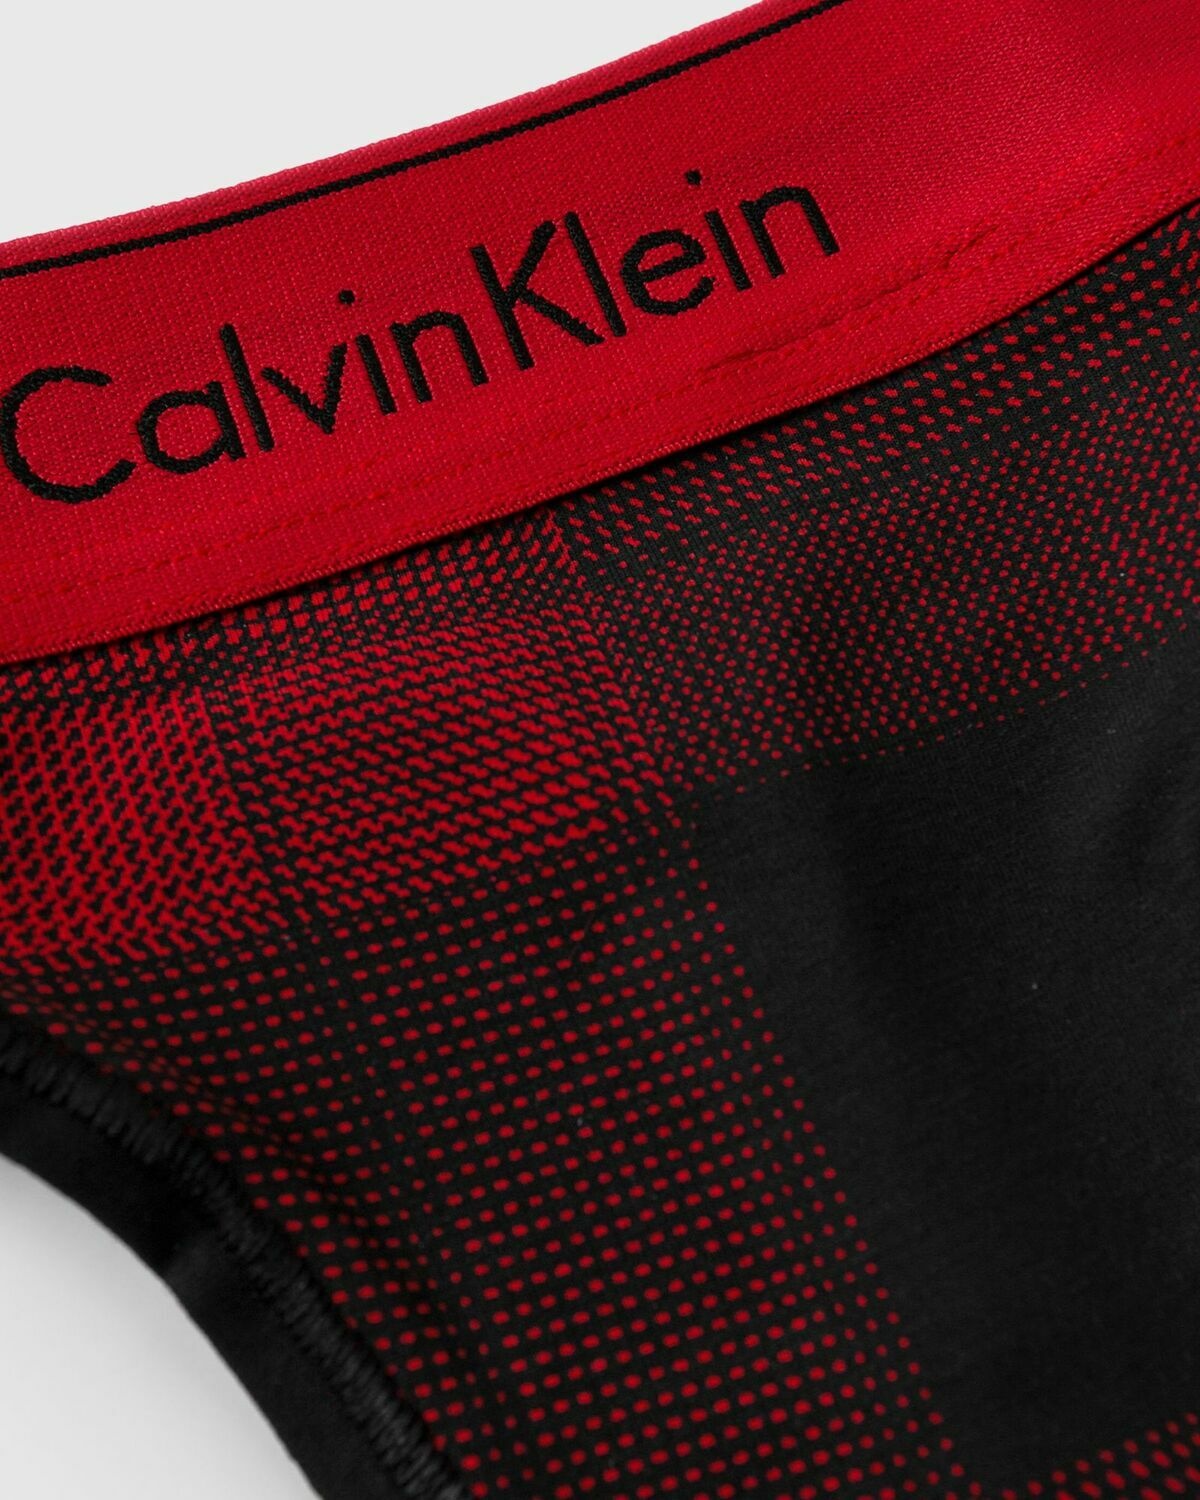 Calvin Klein Bras & Bra Sets for Women